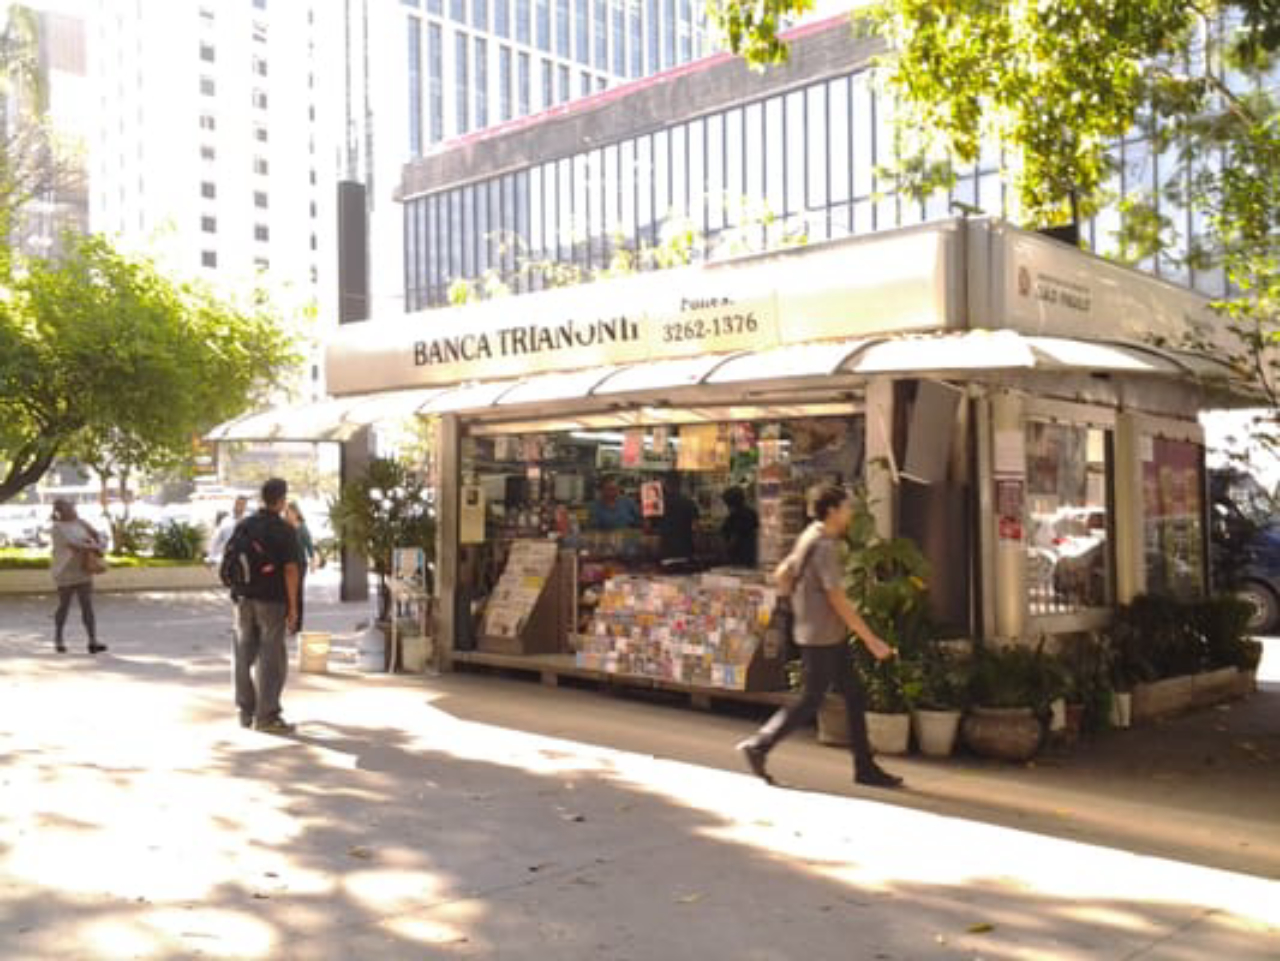 Bancas de jornal ainda são parte integrante do cenário da Avenida Paulista, em São Paulo. Foto: reprodução/Yelp